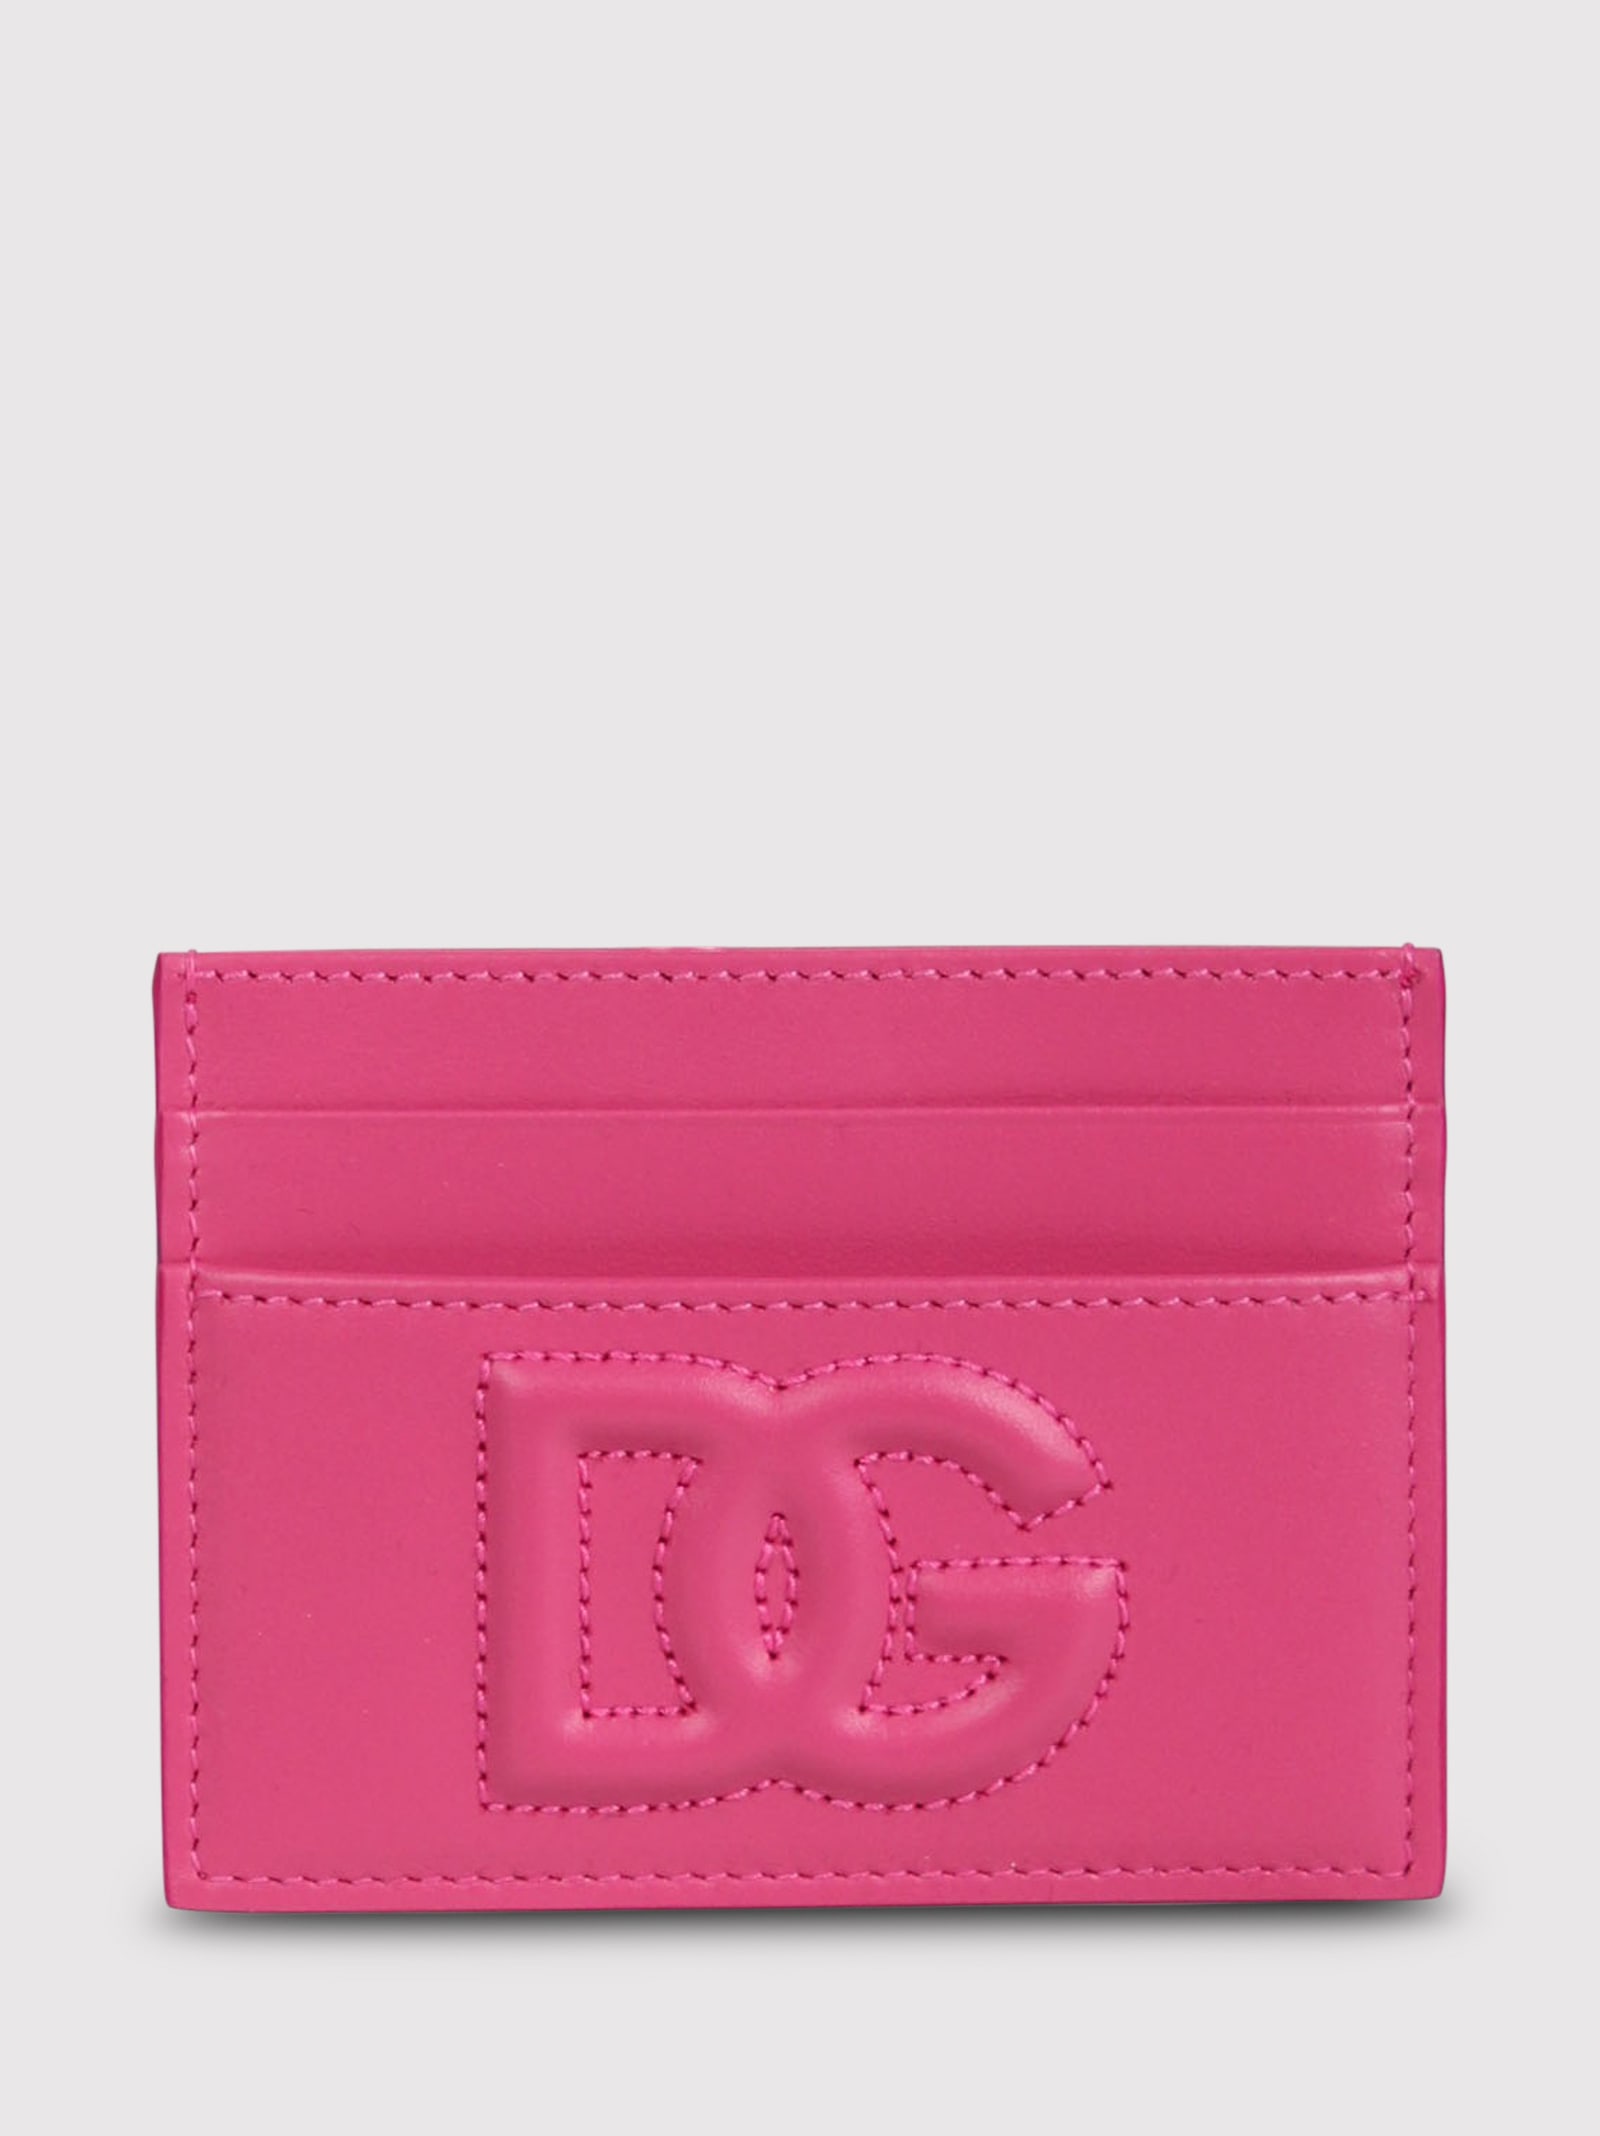 Dolce & Gabbana Smooth Calfskin Card Holder In Pink